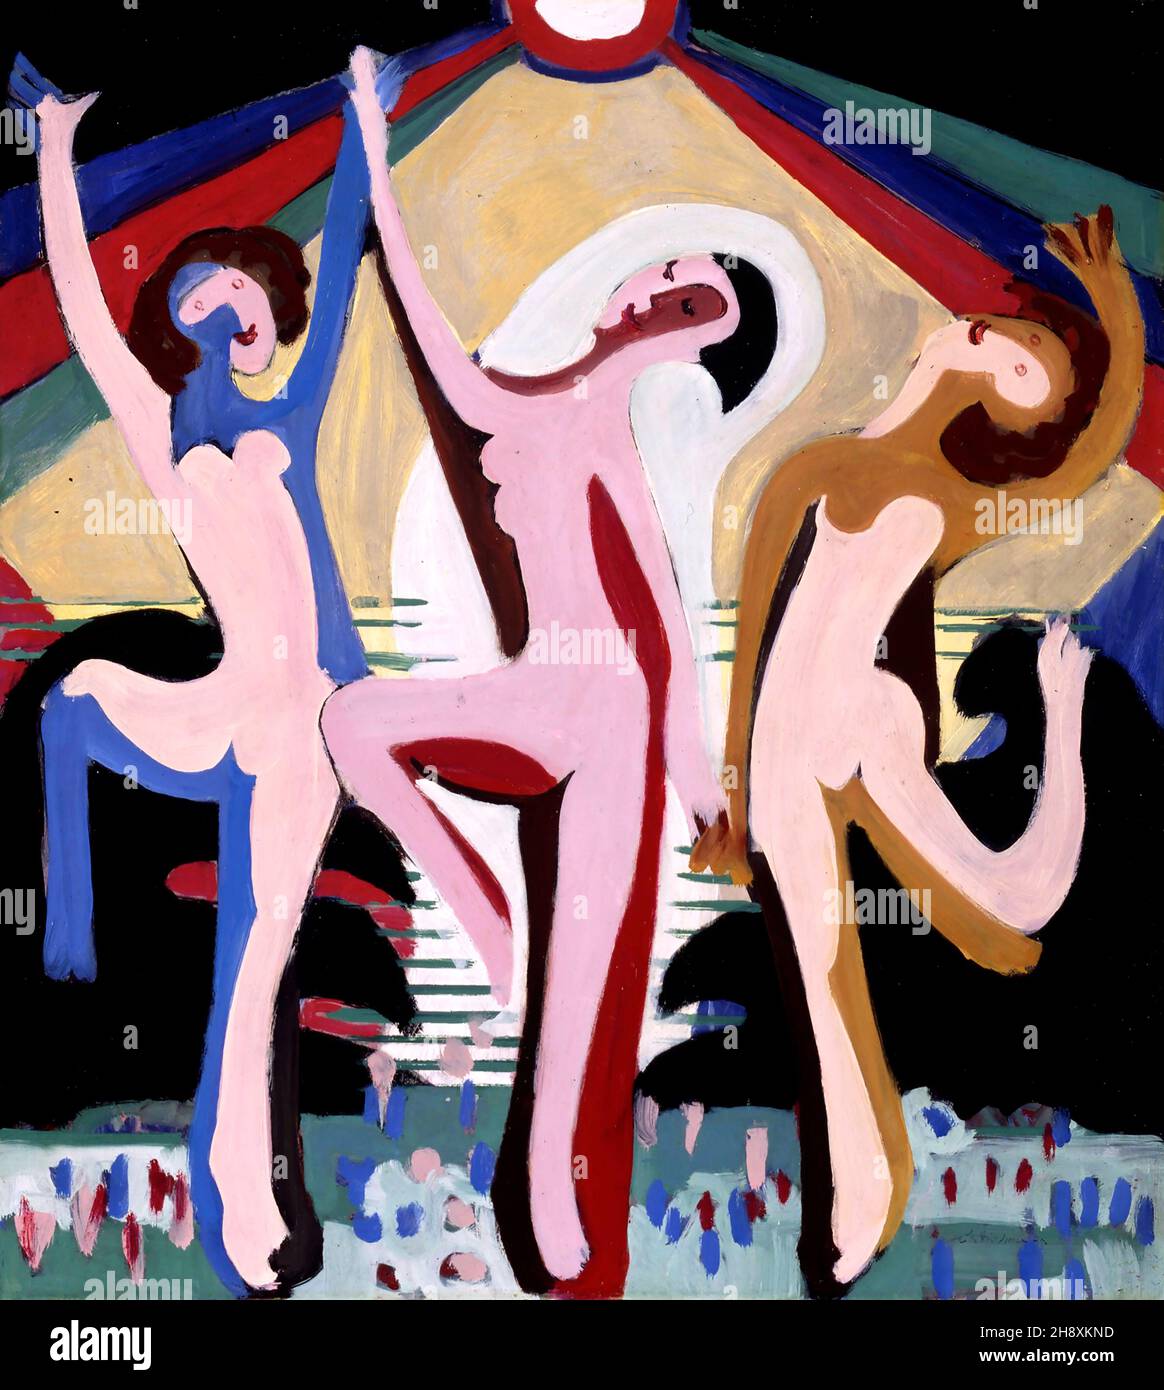 Danse colorée I : conception de la salle de cérémonie au Musée Folkwang par Ernst Ludwig Kirchner (1880-1938), huile sur toile, 1932 Banque D'Images